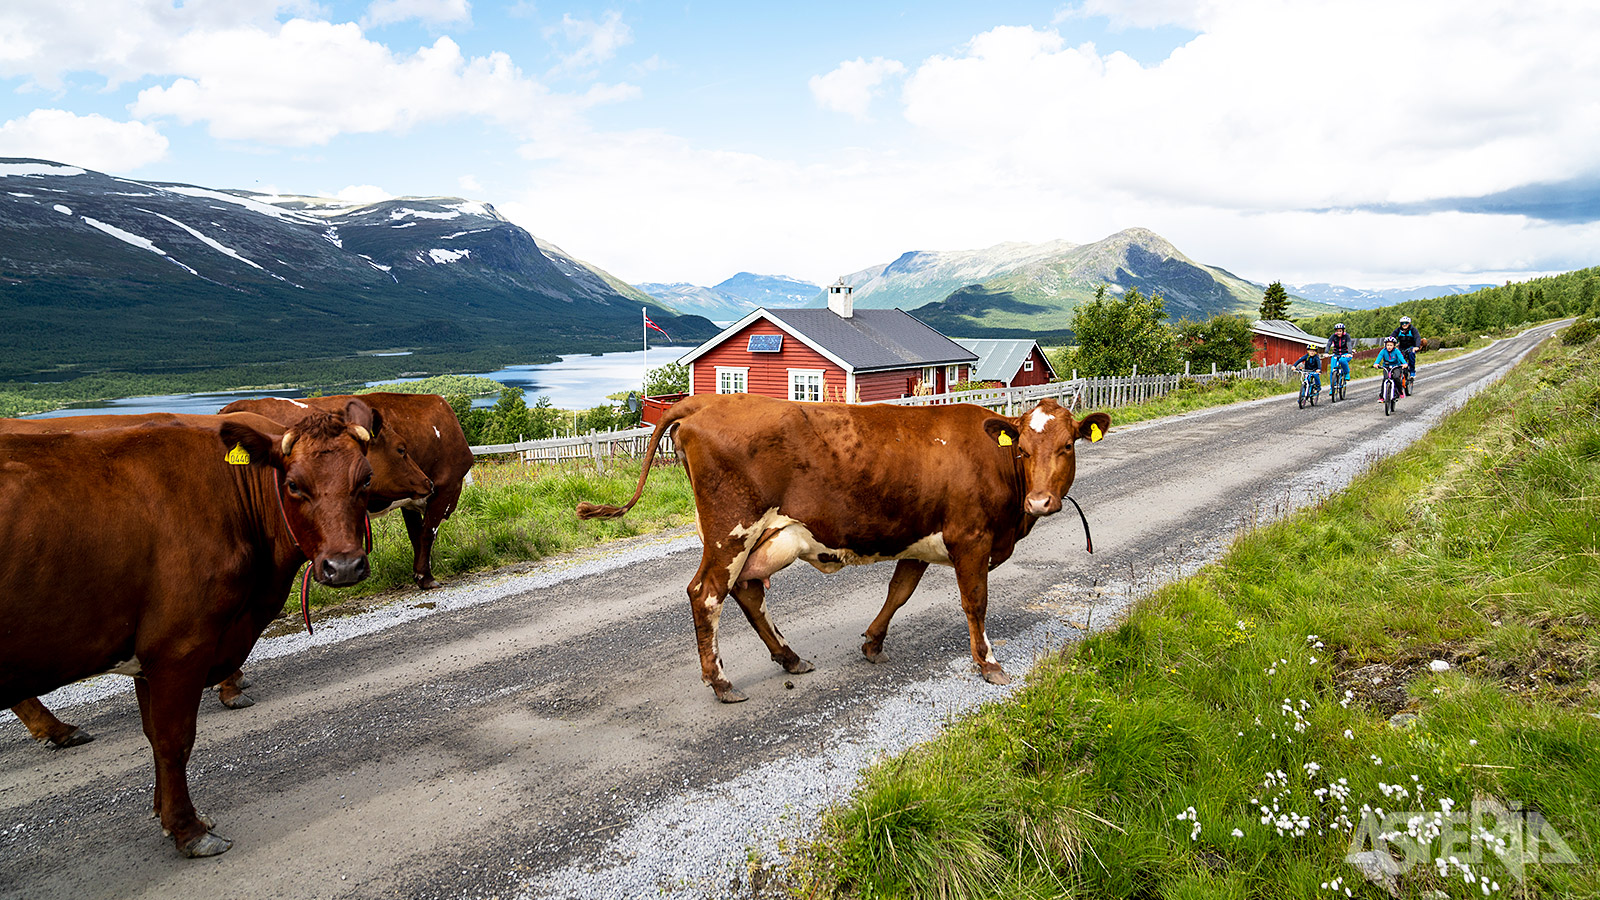 De naam Mjølkevegen verwijst naar de melkveebedrijven die hier de vrij rondlopende koeien komen melken